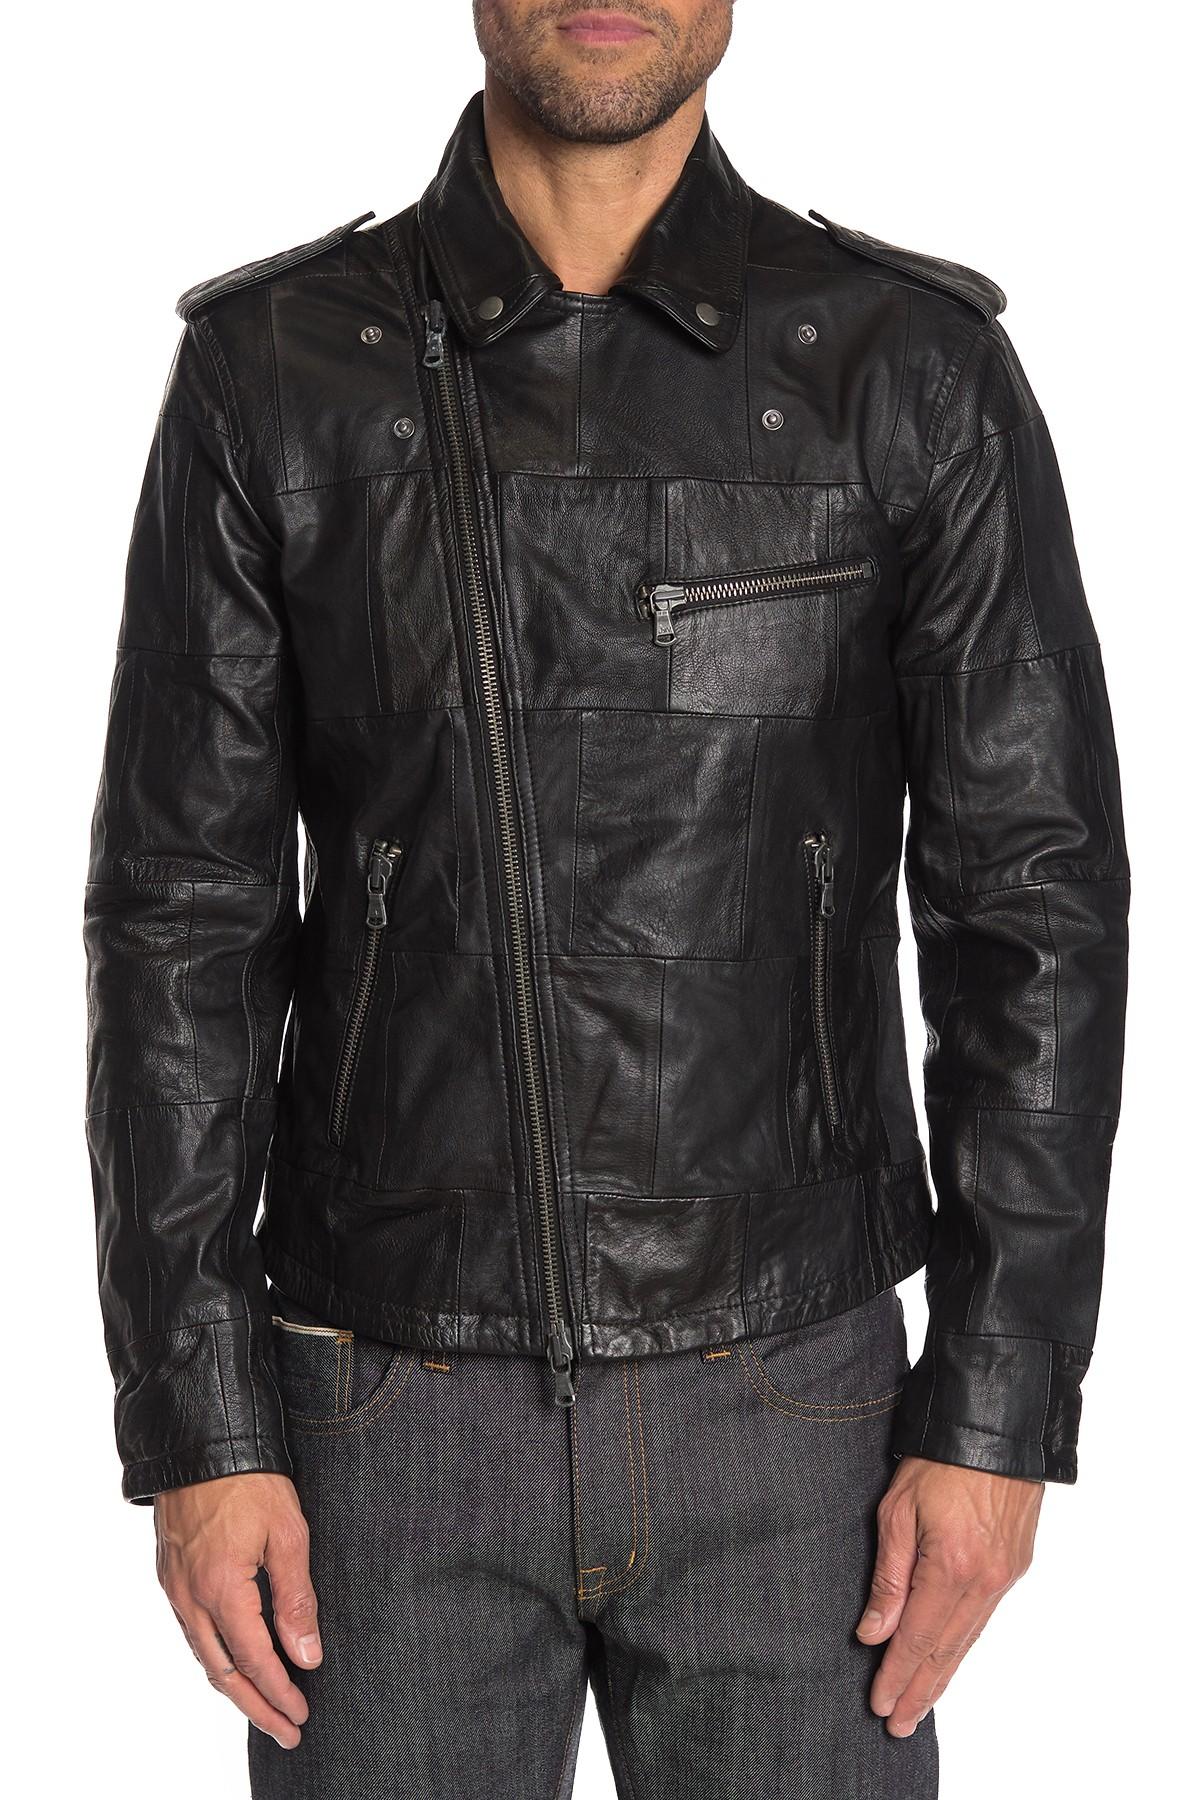 John Varvatos Patchwork Leather Moto Jacket in Black for Men - Lyst